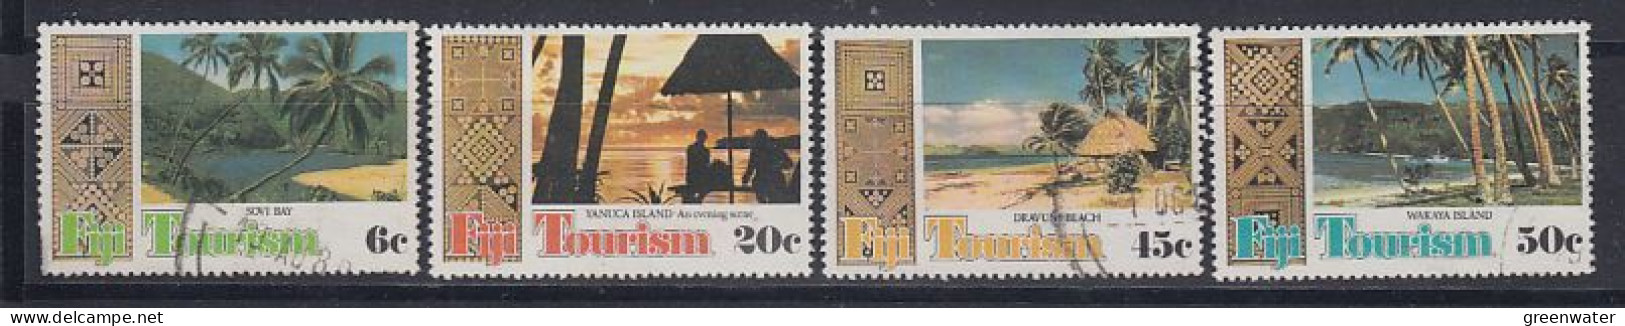 Fidji 1980 Tourism 4v  Used (59839) - Fidji (1970-...)